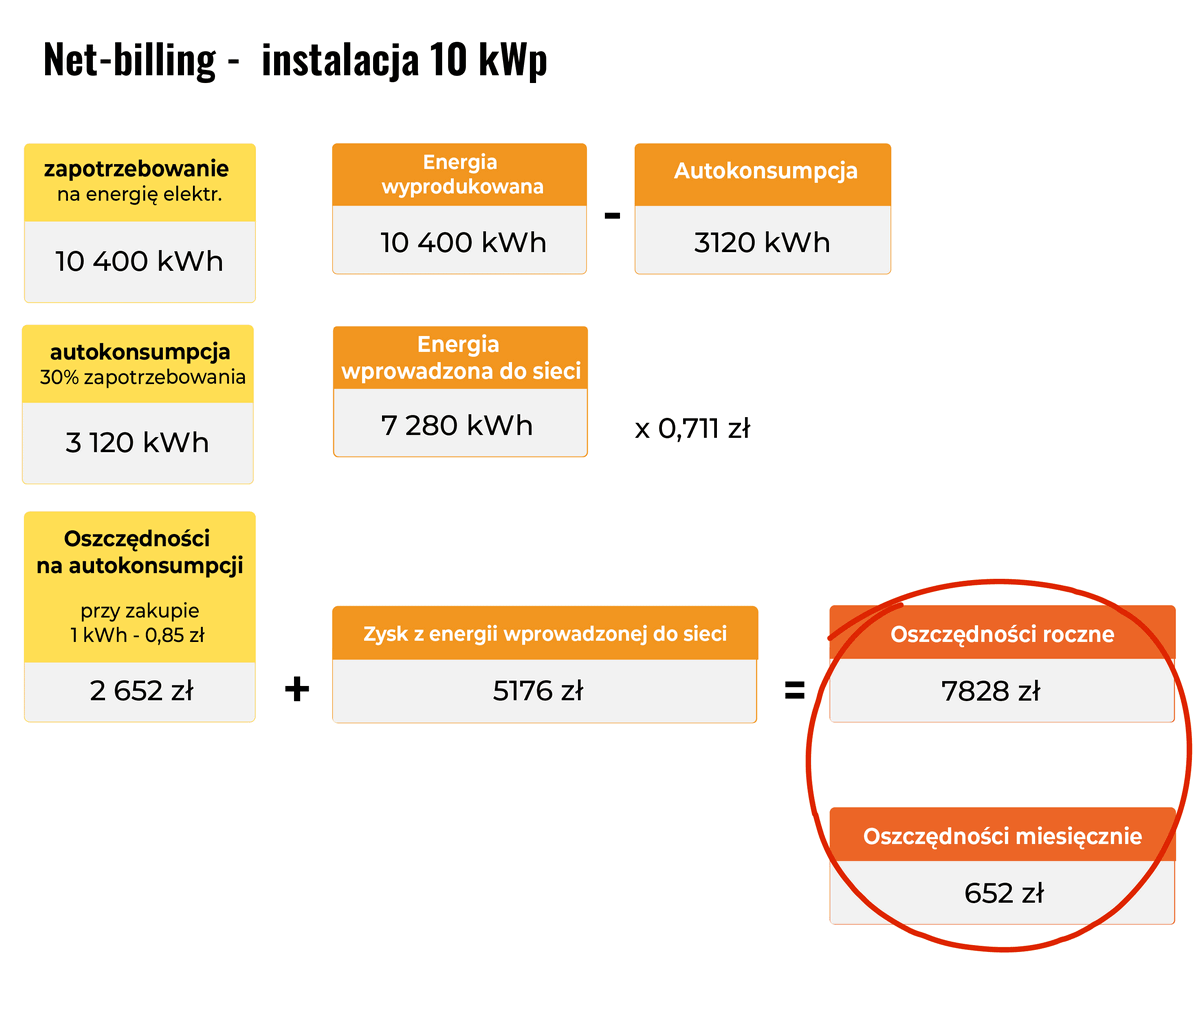 Rozliczenie system net billingu wrzesień - przykład 10 kWp